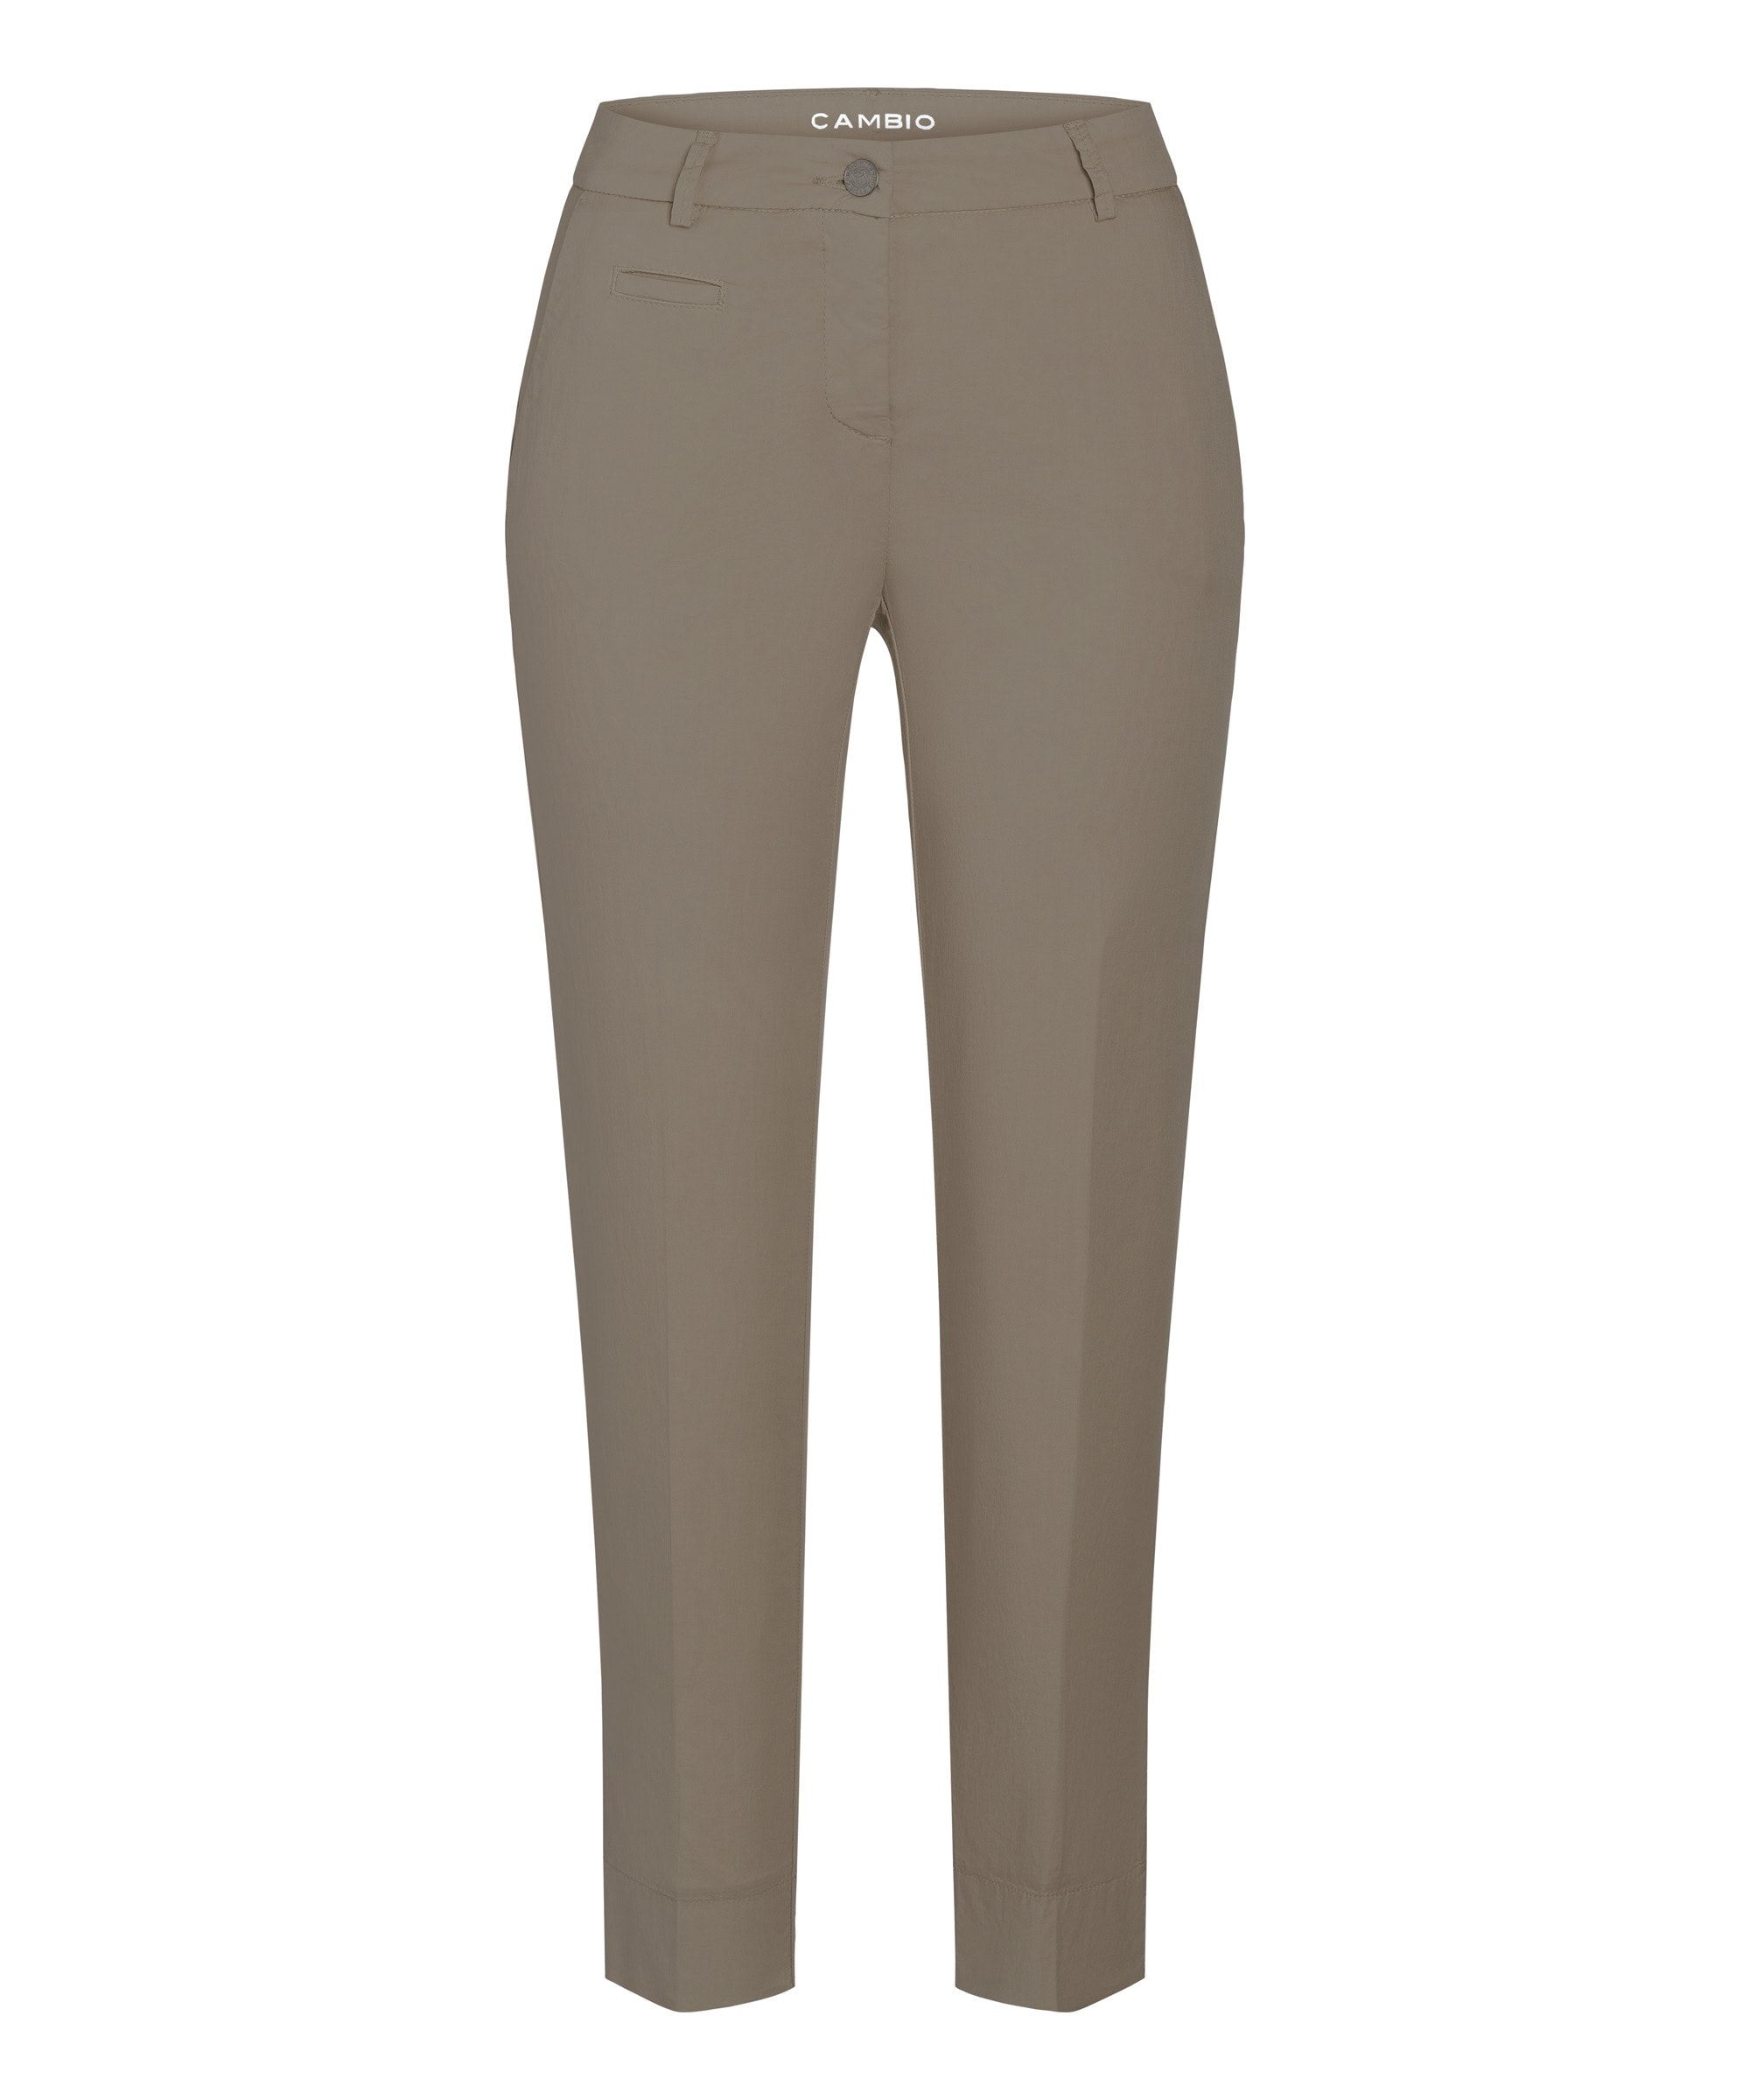 Spodnie materiałowe, zapinane na guzik, kolor beżowe Cambio Stella cropped 0360-01-7642-604